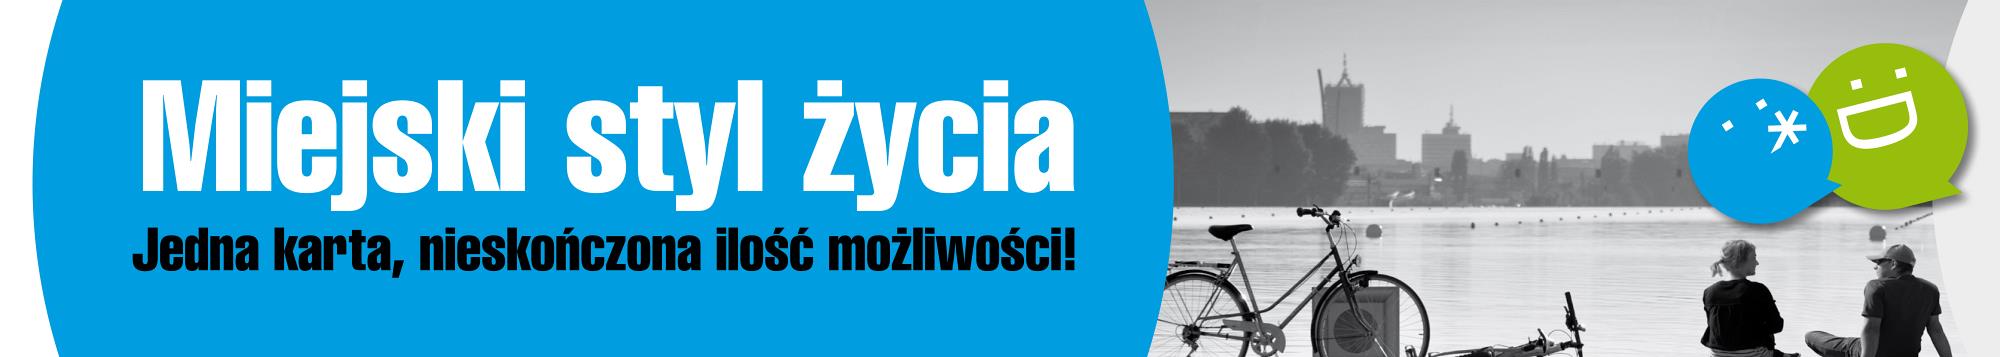 POZNAŃSKA ELEKTRONICZNA KARTA AGLOMERACYJNA korzyści dla pasażerów, mieszkańców, miasta Poznań, 9.05.